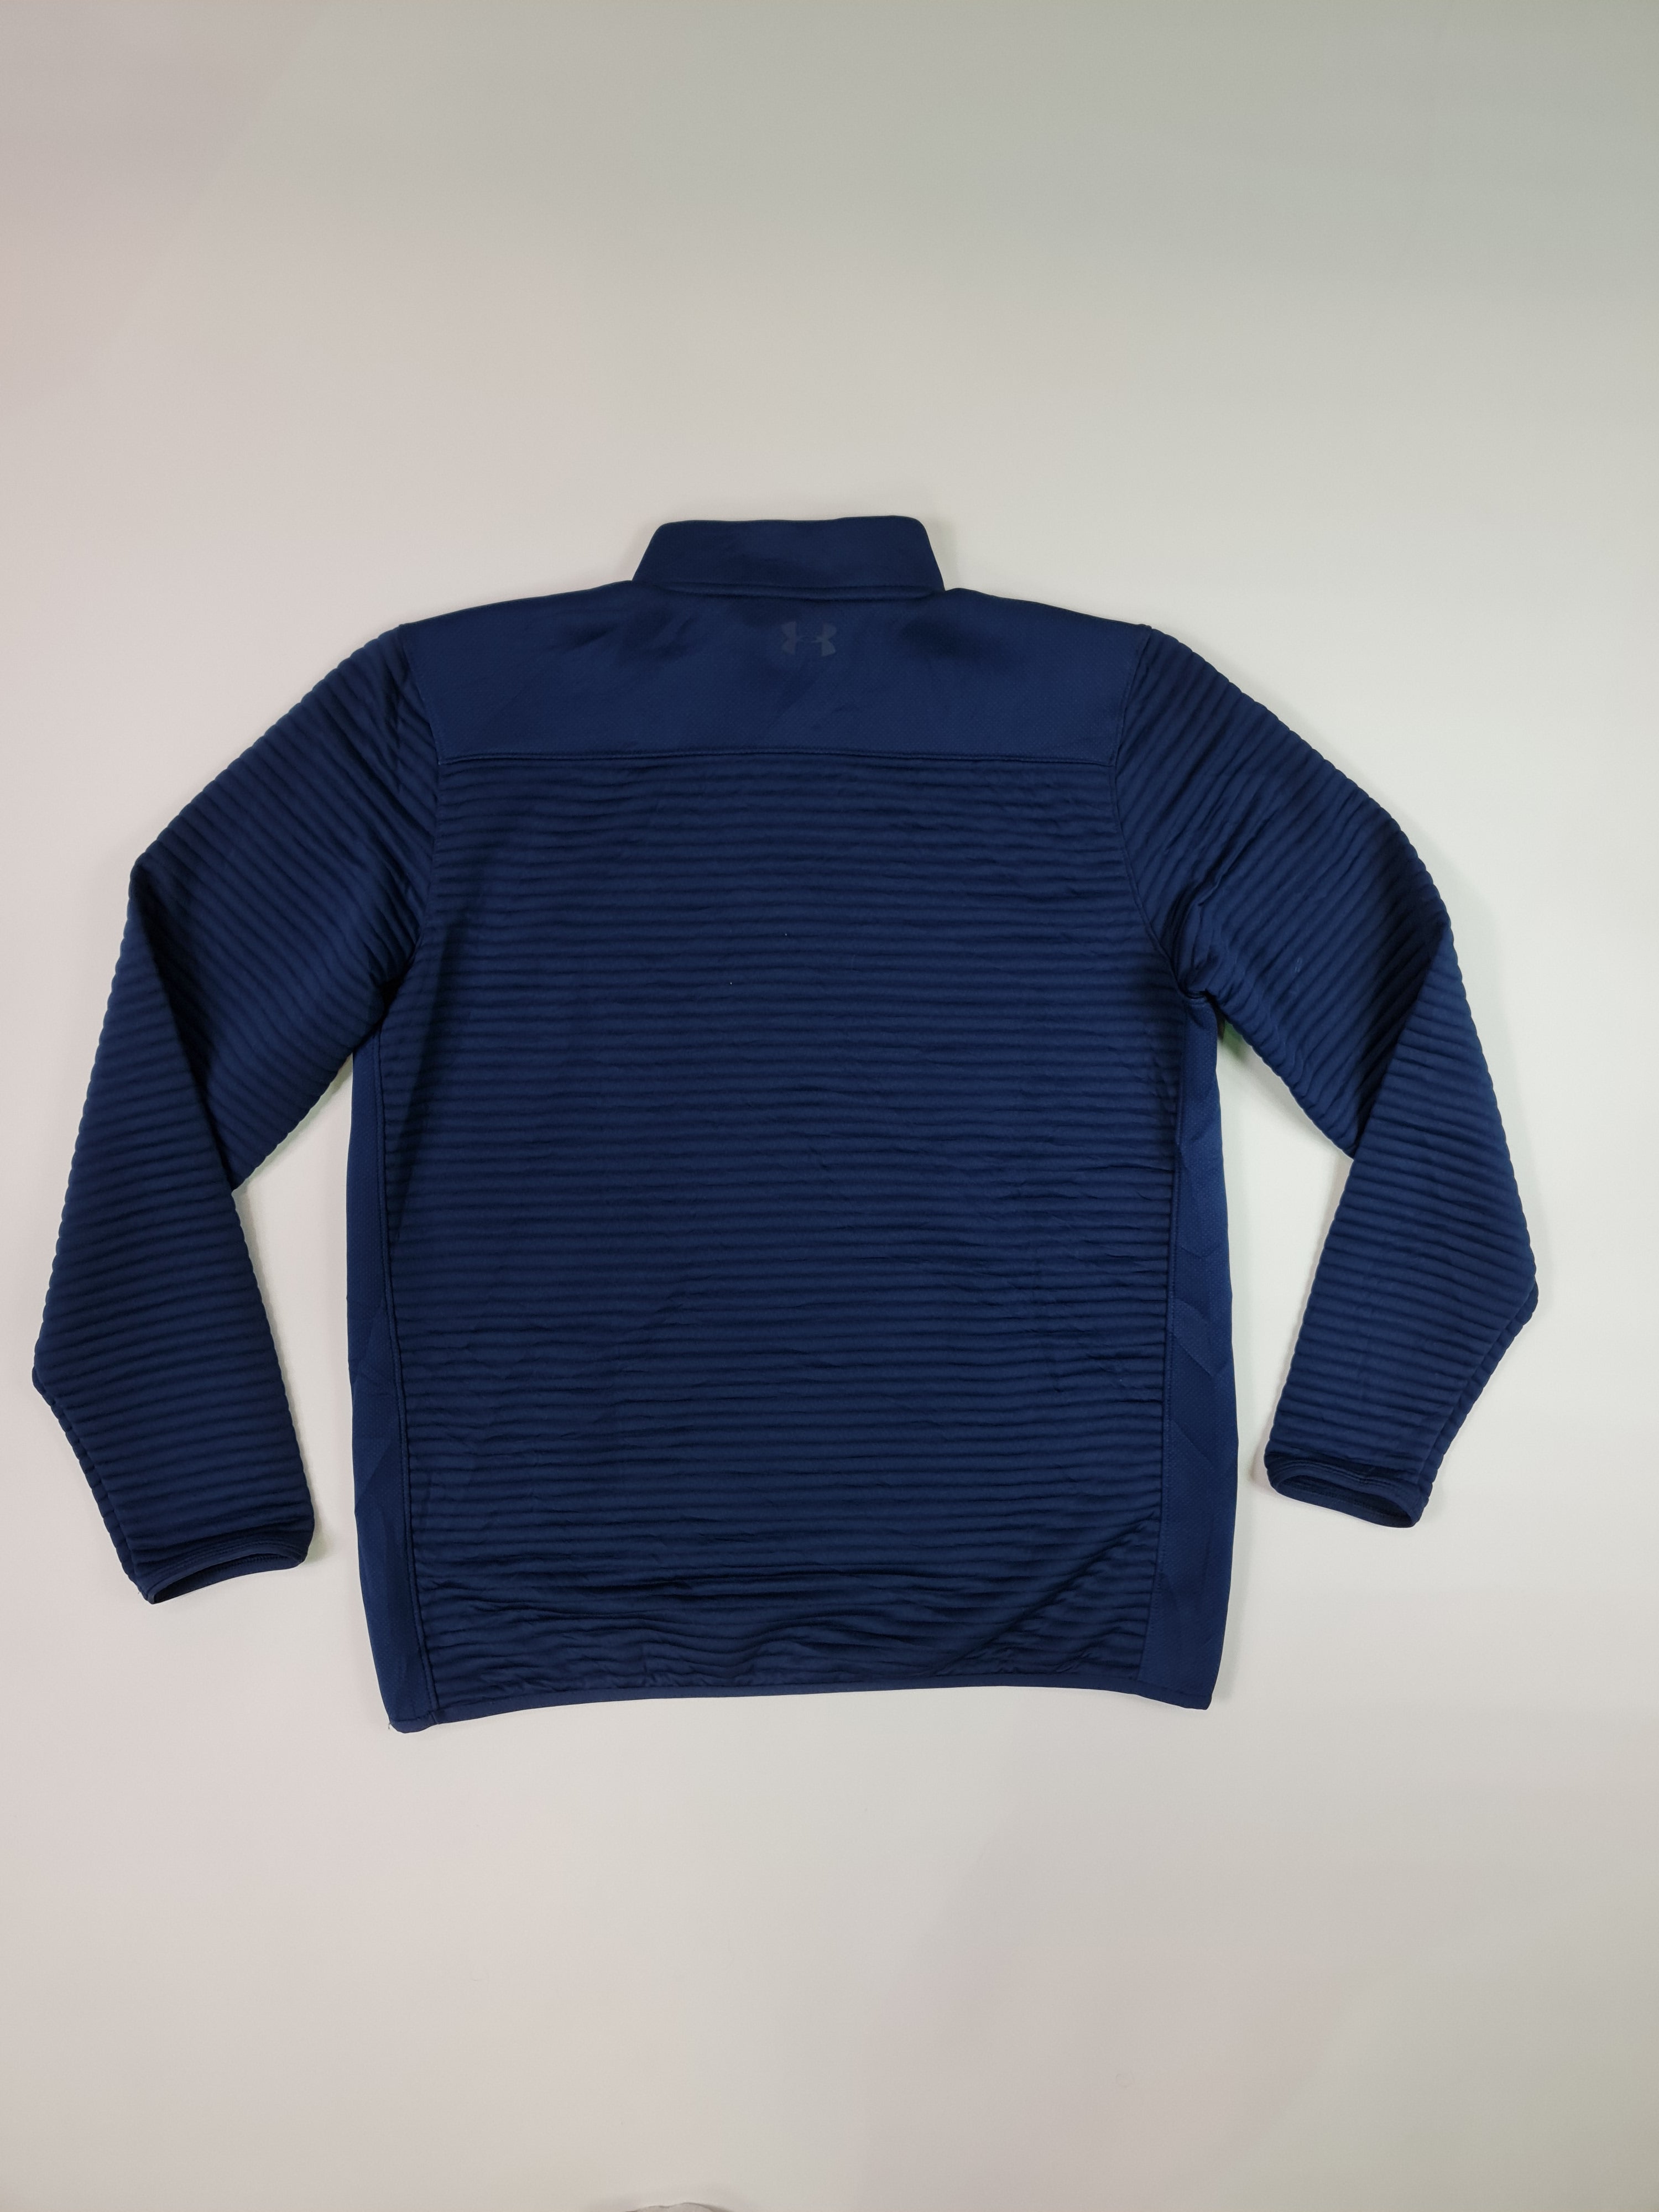 Suéter, marca Under Armour - (Talla: L/G) Azul